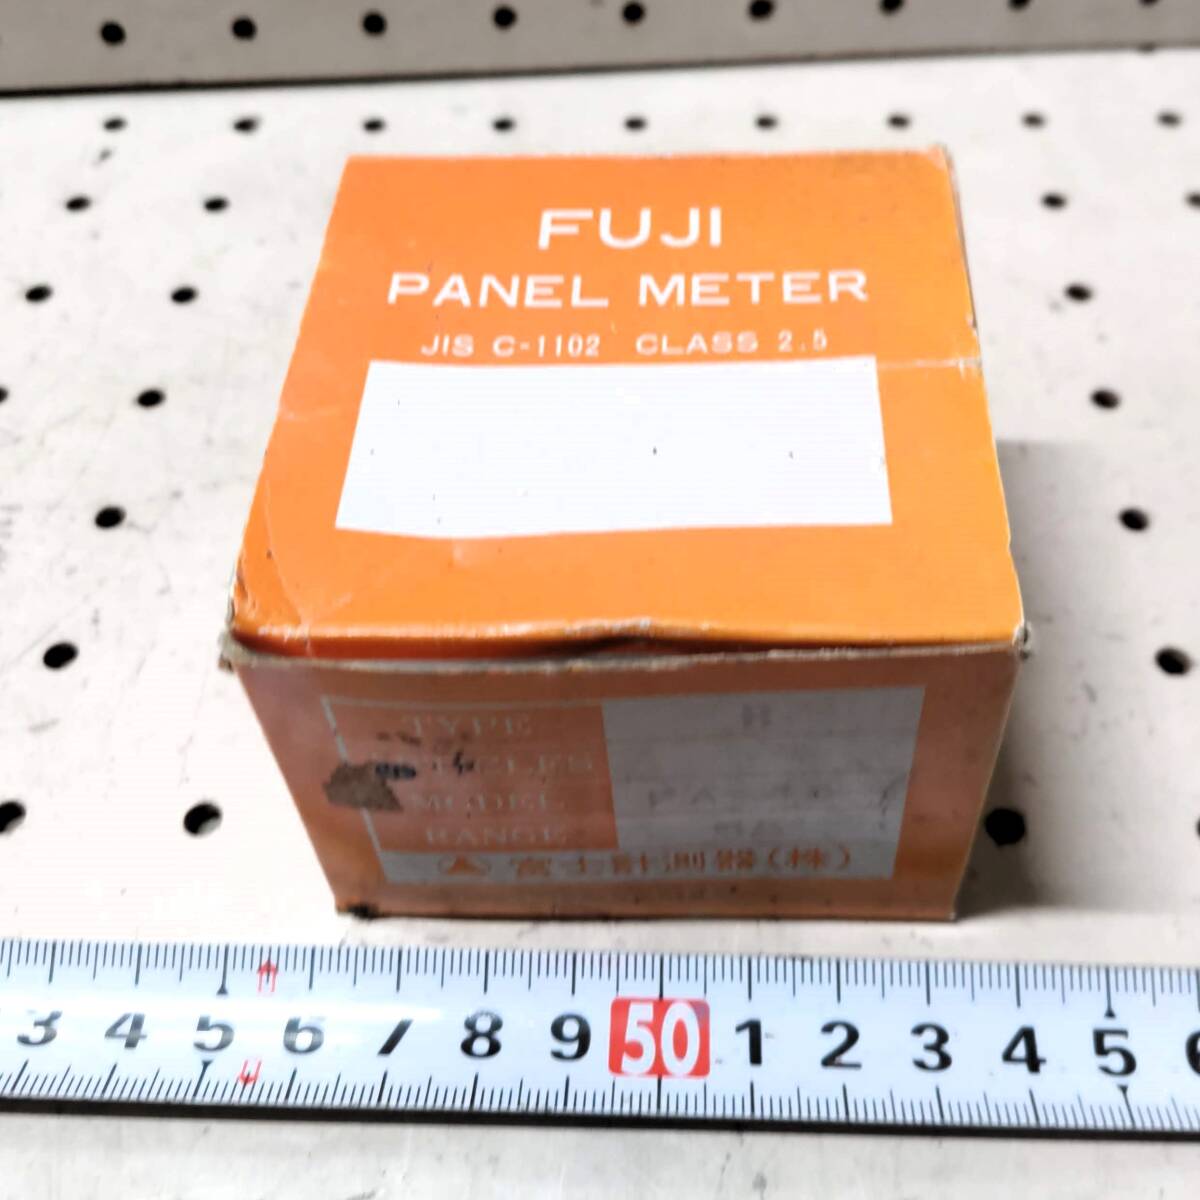 W133 Fuji измеритель FUJI PANEL METER Fuji panel измерительный прибор B FA-45 5A panel трещина не использовался товары долгосрочного хранения работоспособность не проверялась 